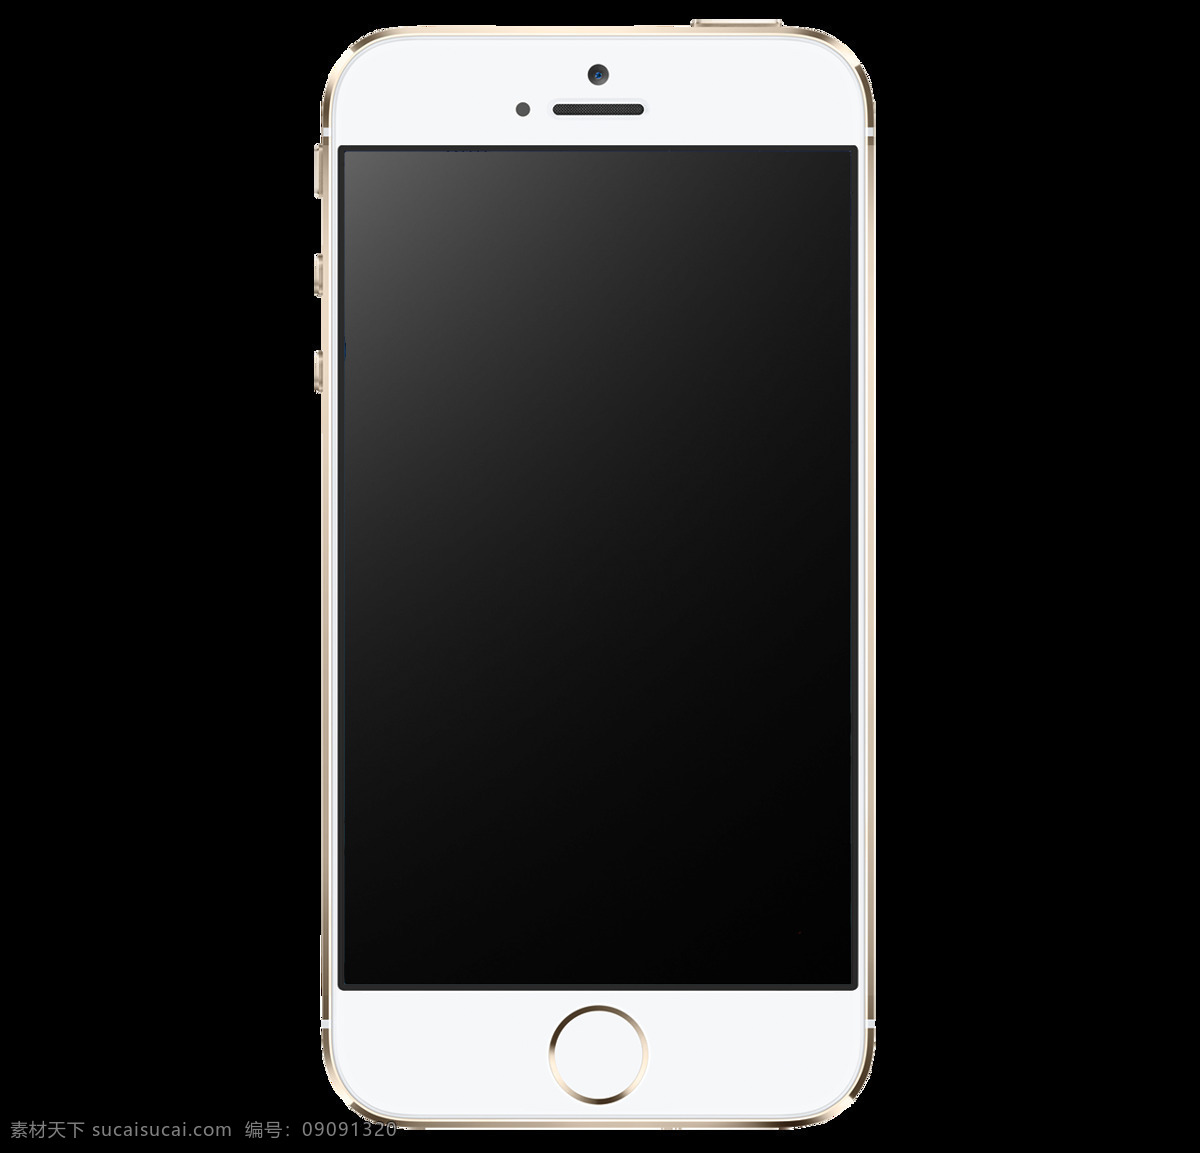 phone5 免 抠 透明 图 层 苹果 手机 宣传 苹果手机素材 iphone7 苹果手机6s phone6 phone6s phone7 plus 苹果手机